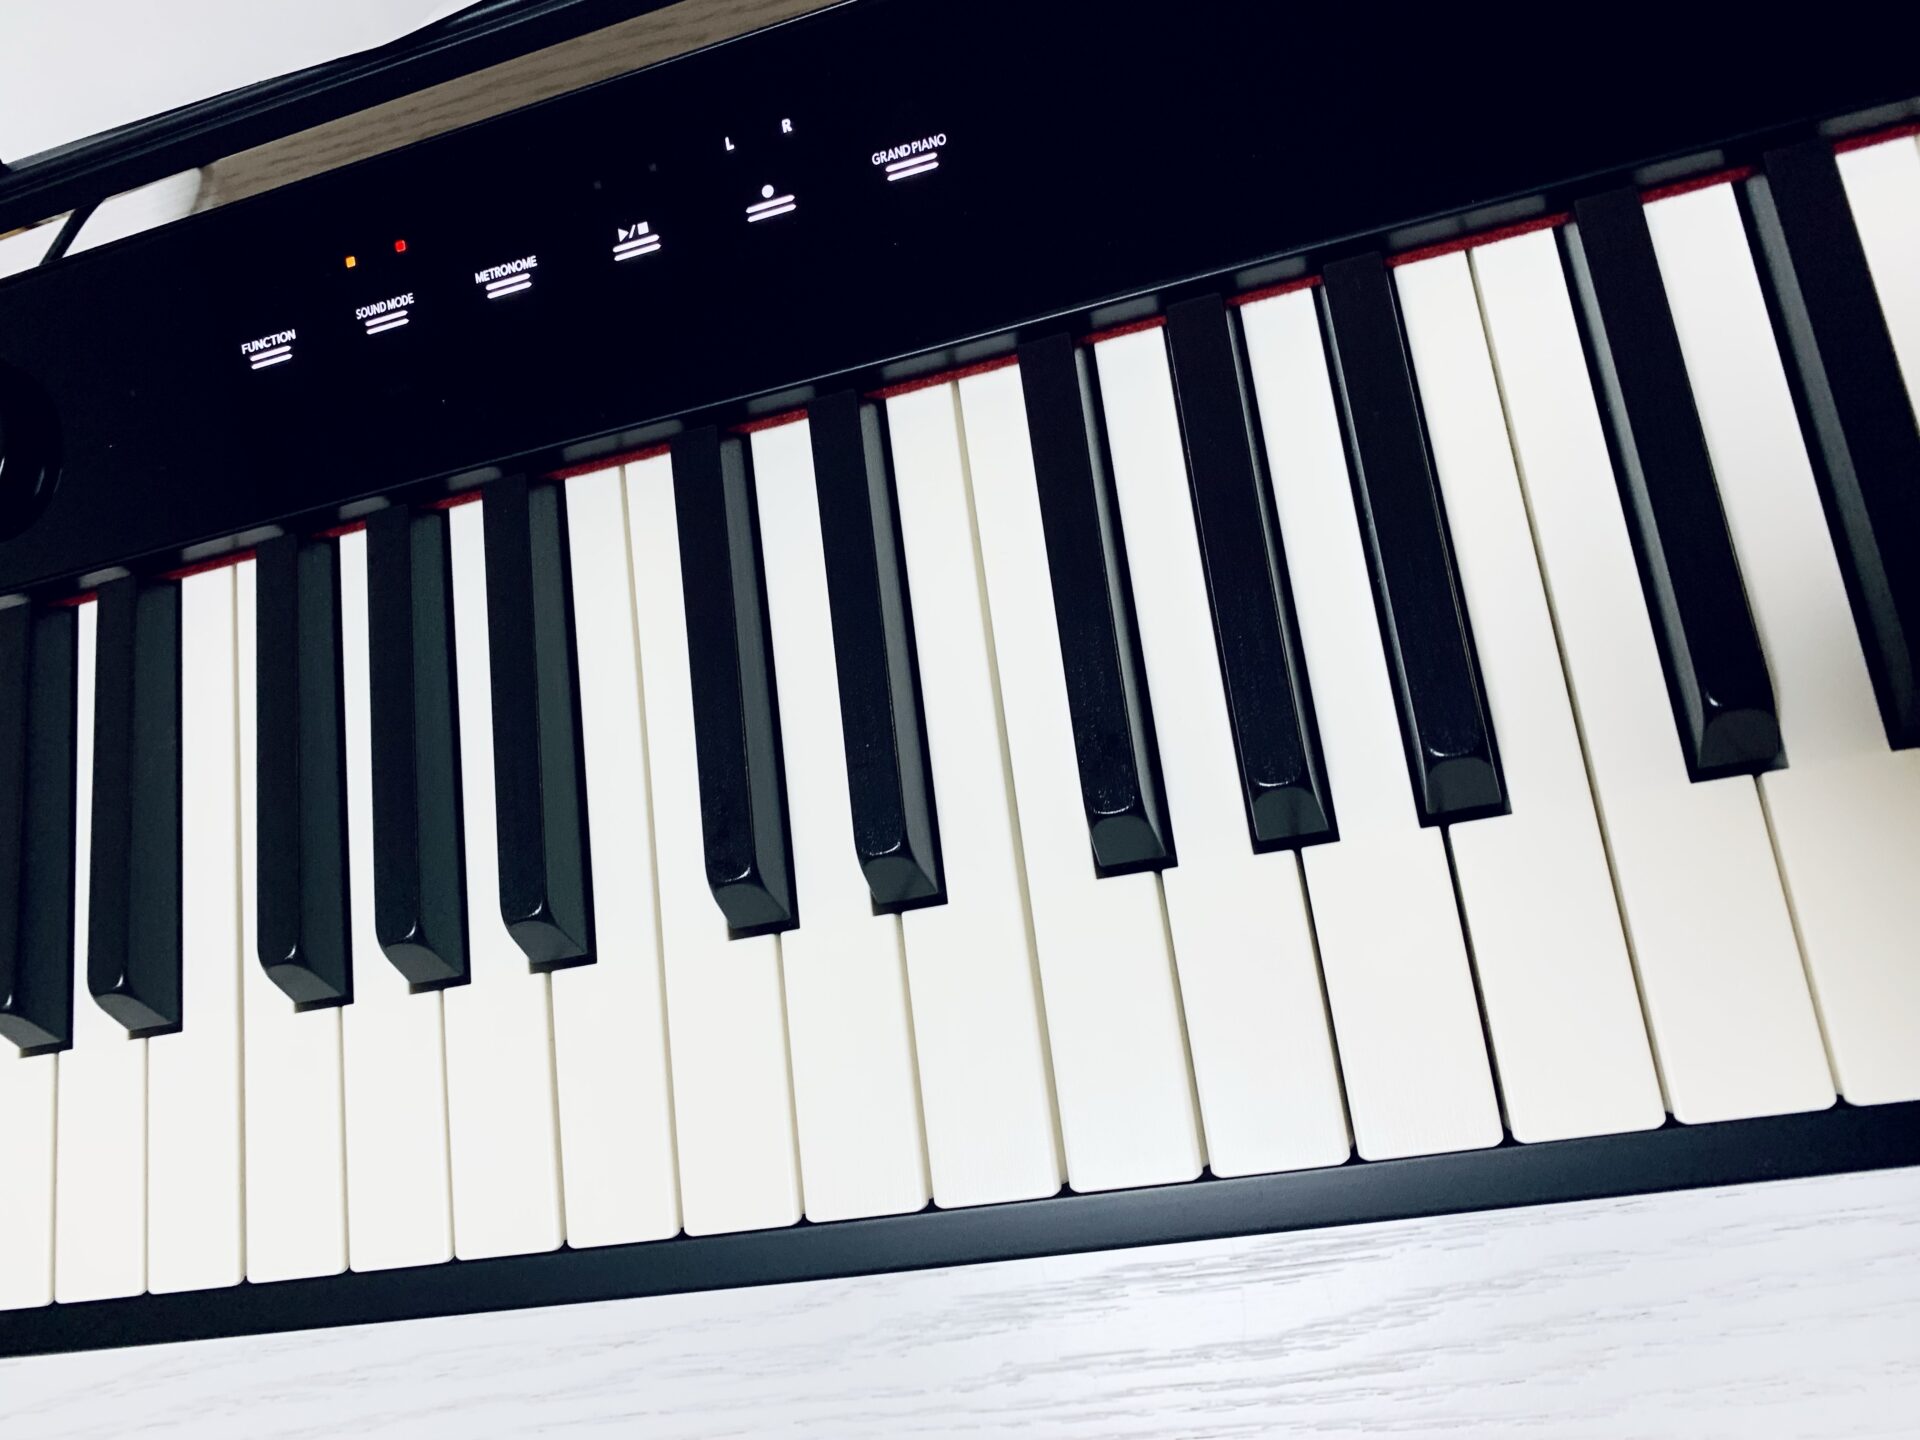 無条件！特別価格 新品CASIO電子ピアノ 楽器/器材 PX-S1100黒 カシオ電子ピアノPX-S1100/黒 ★カシオ電子ピアノPX